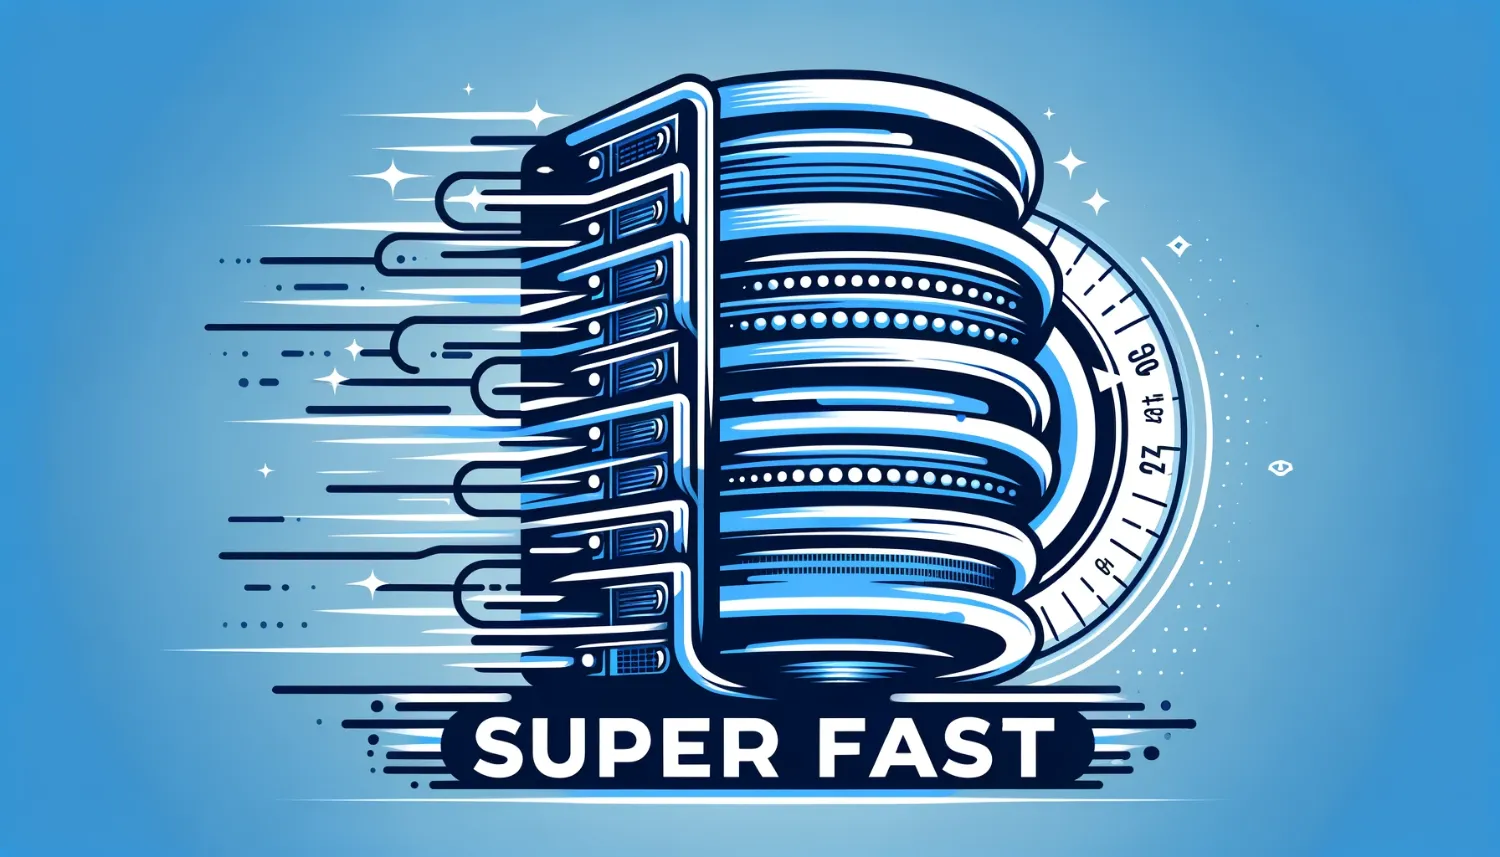 Ilustrasi kecepatan loading laman web yang super cepat, dengan server dan simbol kecepatan.